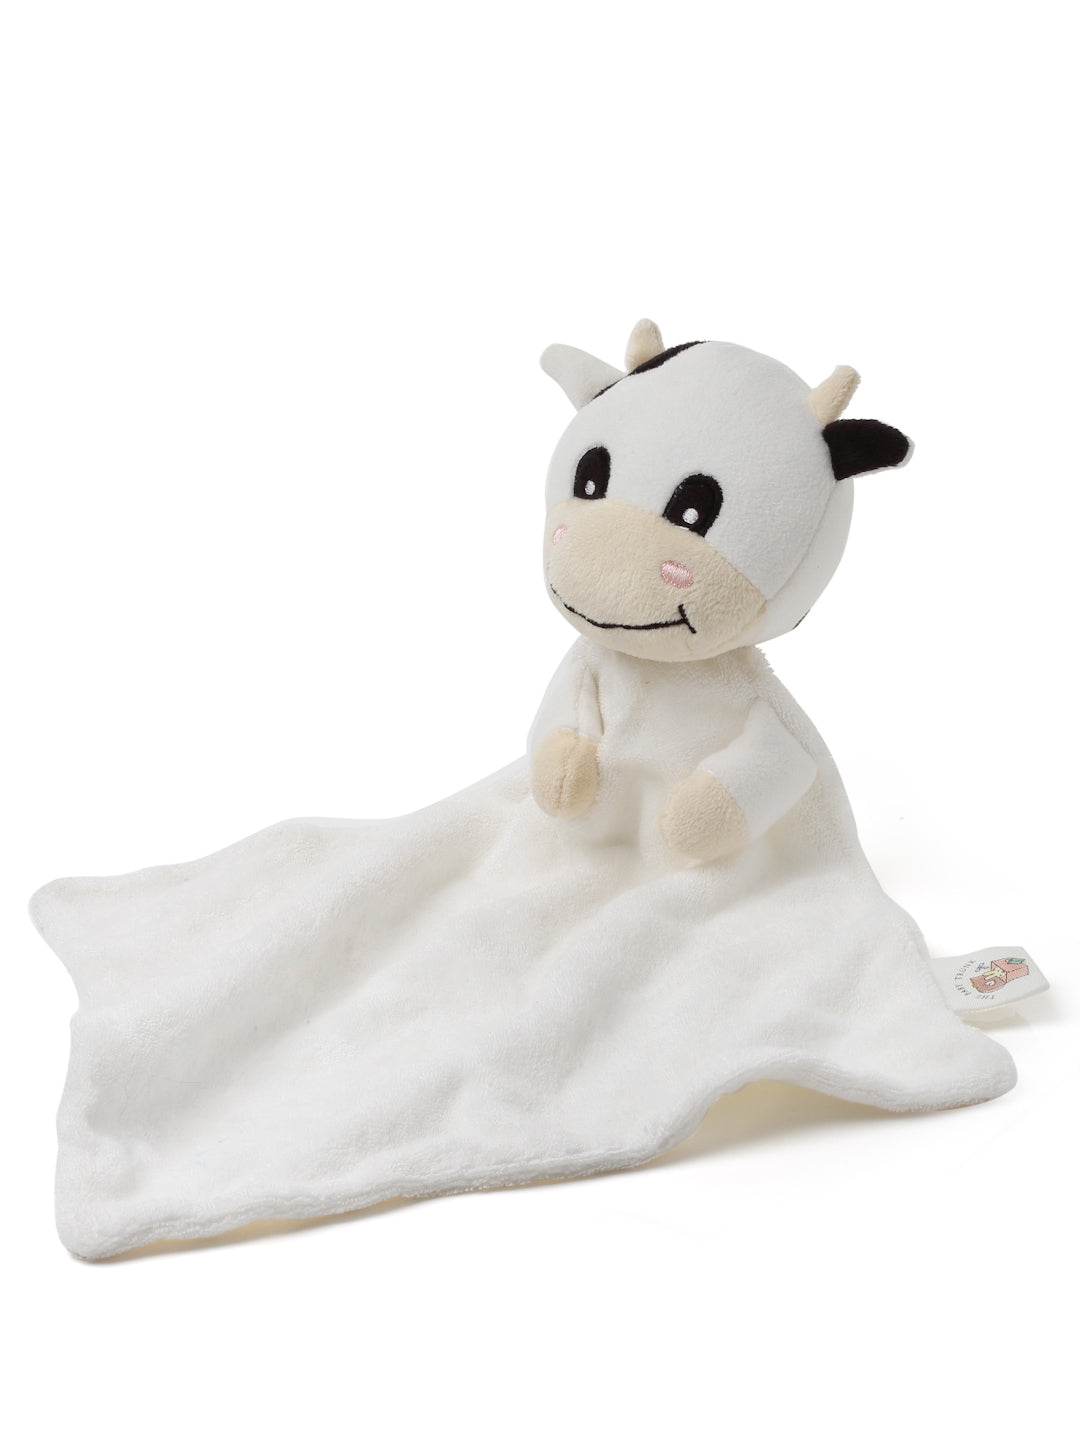 Cow Comforter